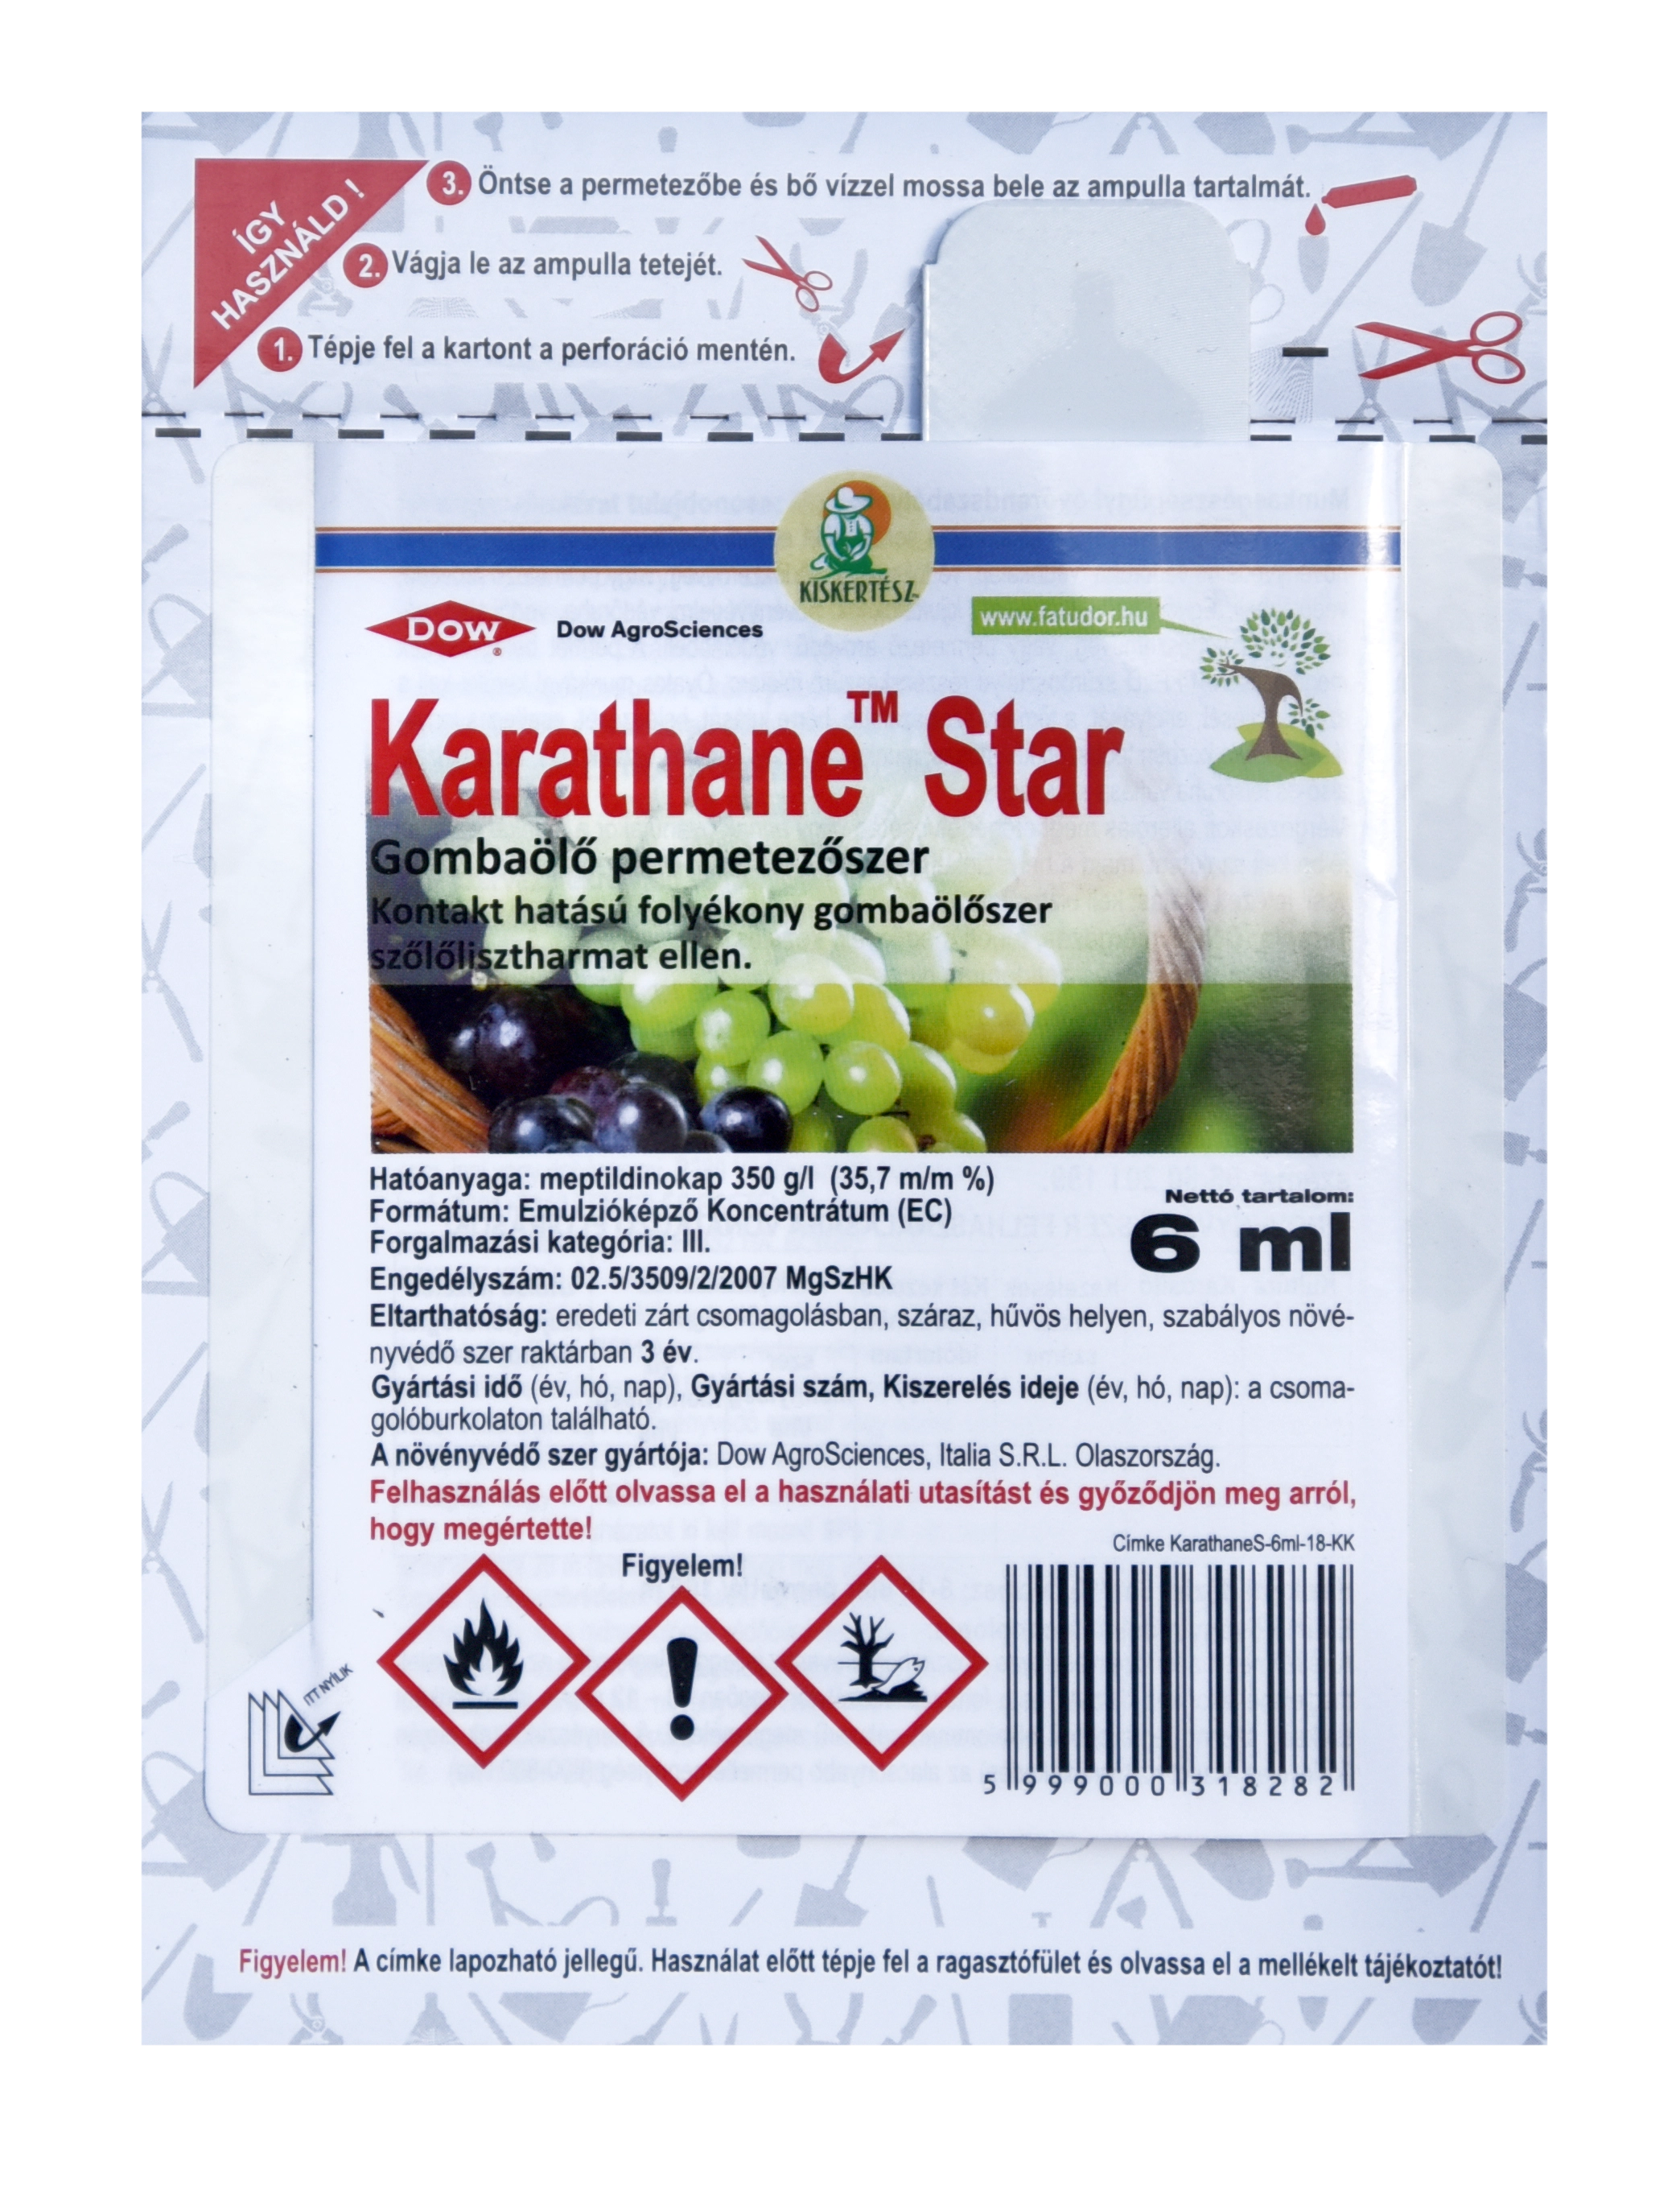 Karathane Star gombaölő permetezőszer 6 ml ampulla